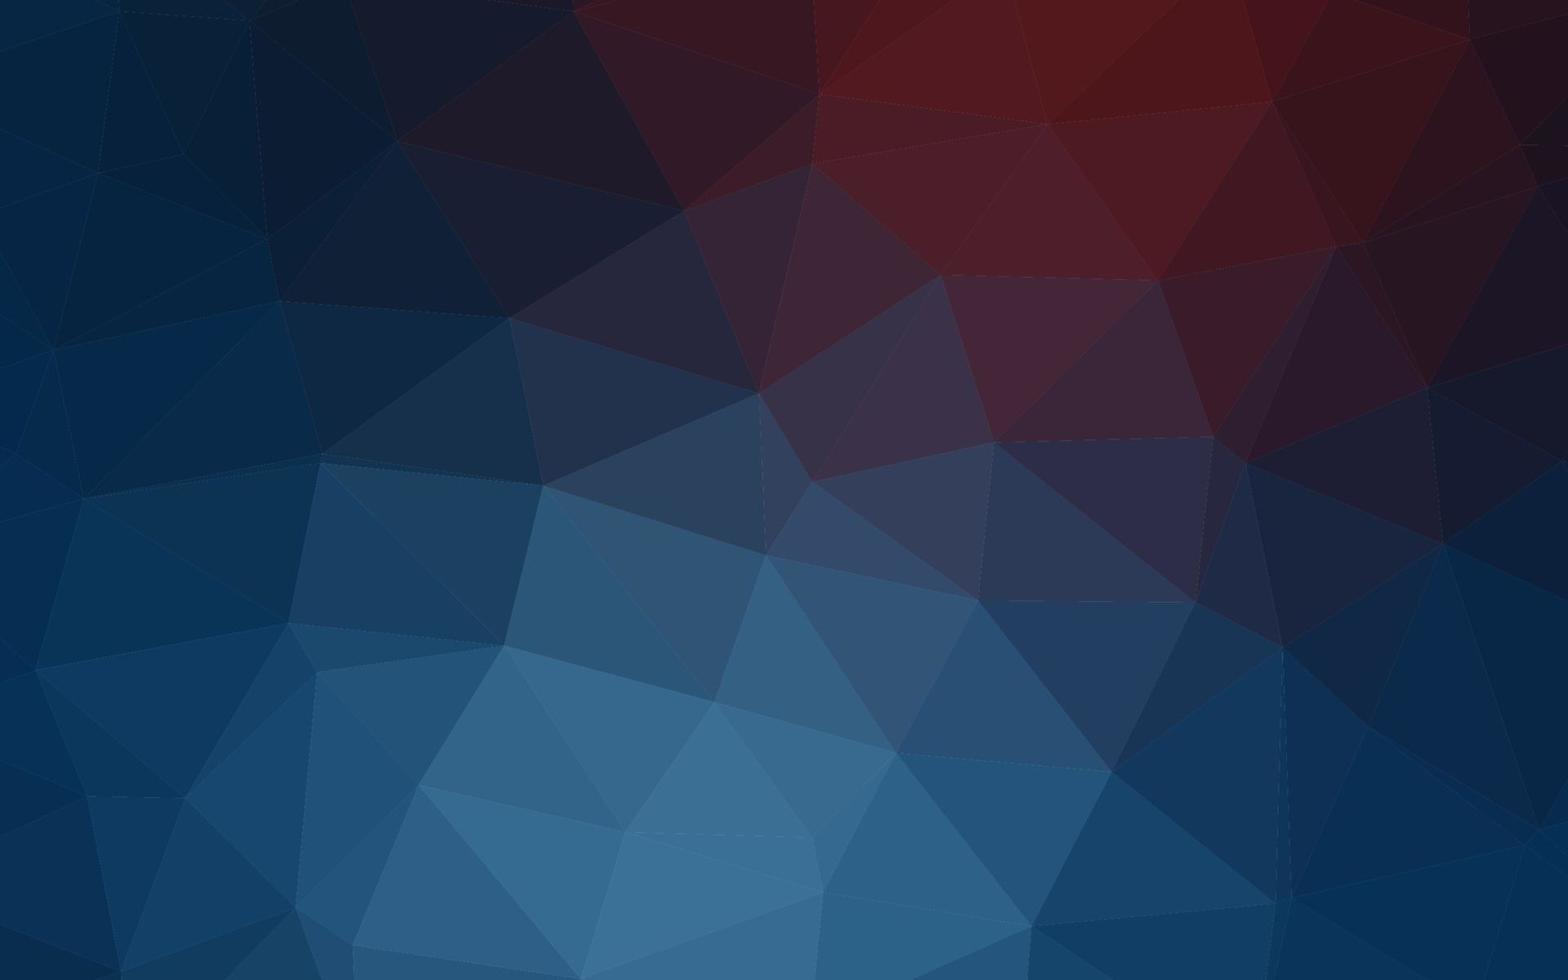 struttura poligonale astratta di vettore blu scuro, rosso.